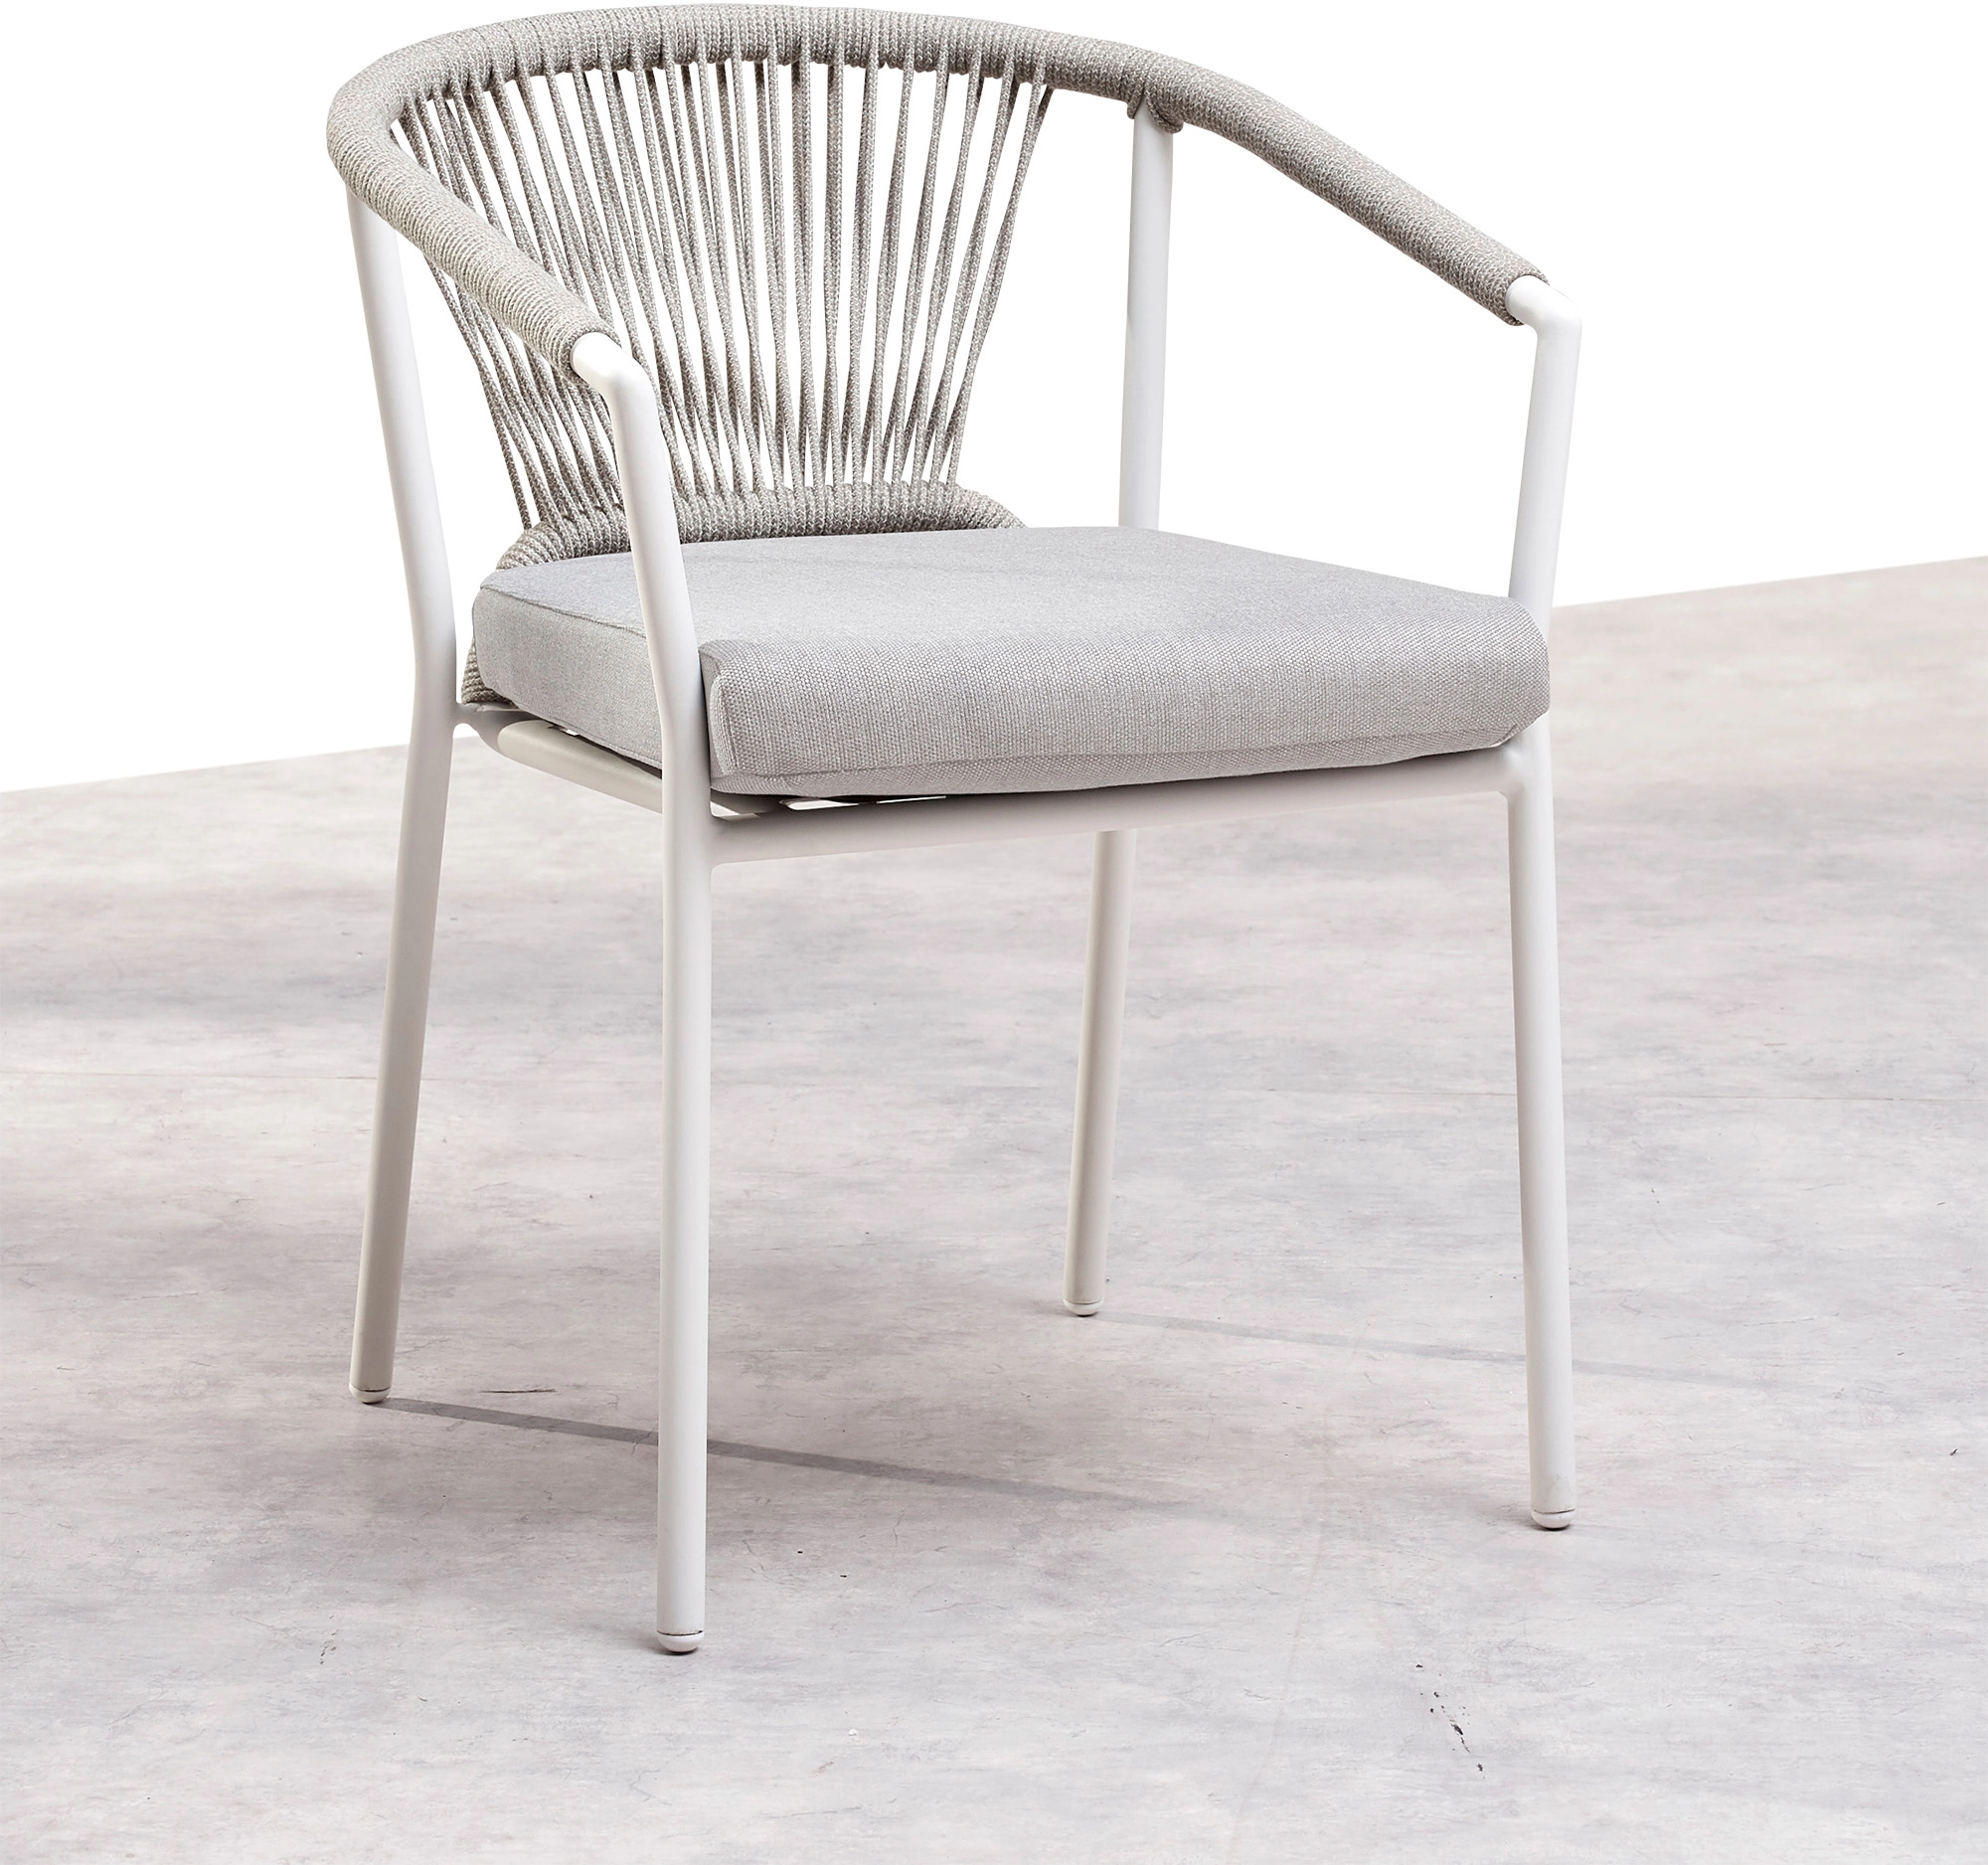 OBI cm Weiß/Sand x cm Matera 59 kaufen bei 61 x Best 79 cm Dining-Sessel